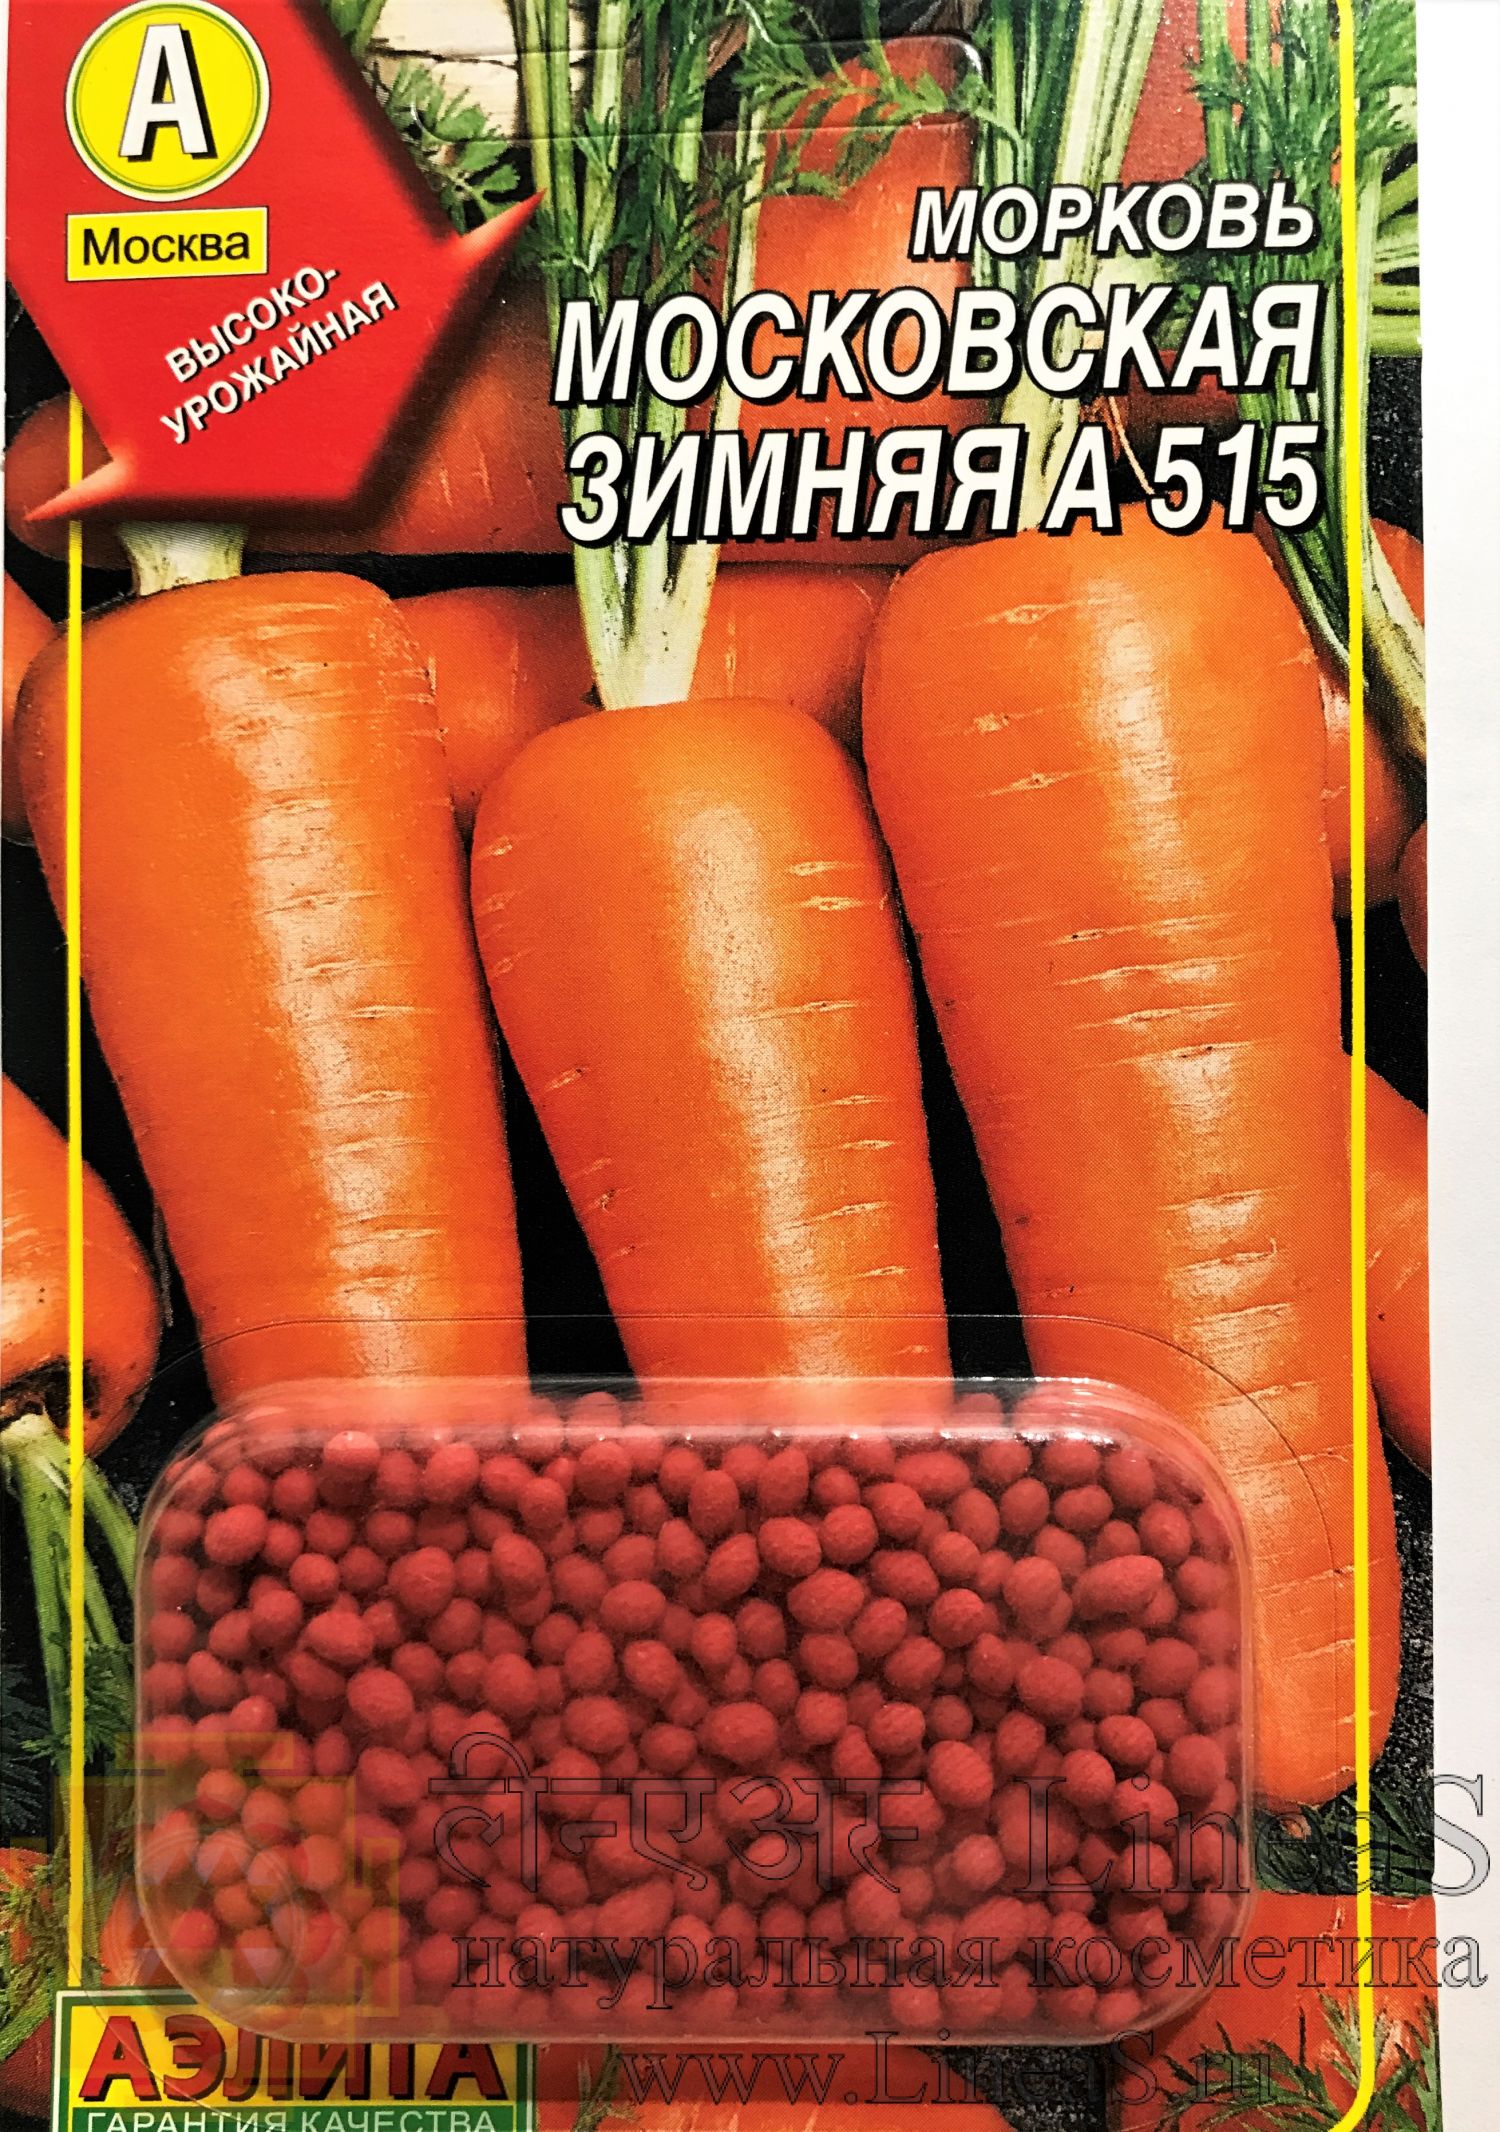 Морковь Московская зимняя А 515 (семена в гранулах)